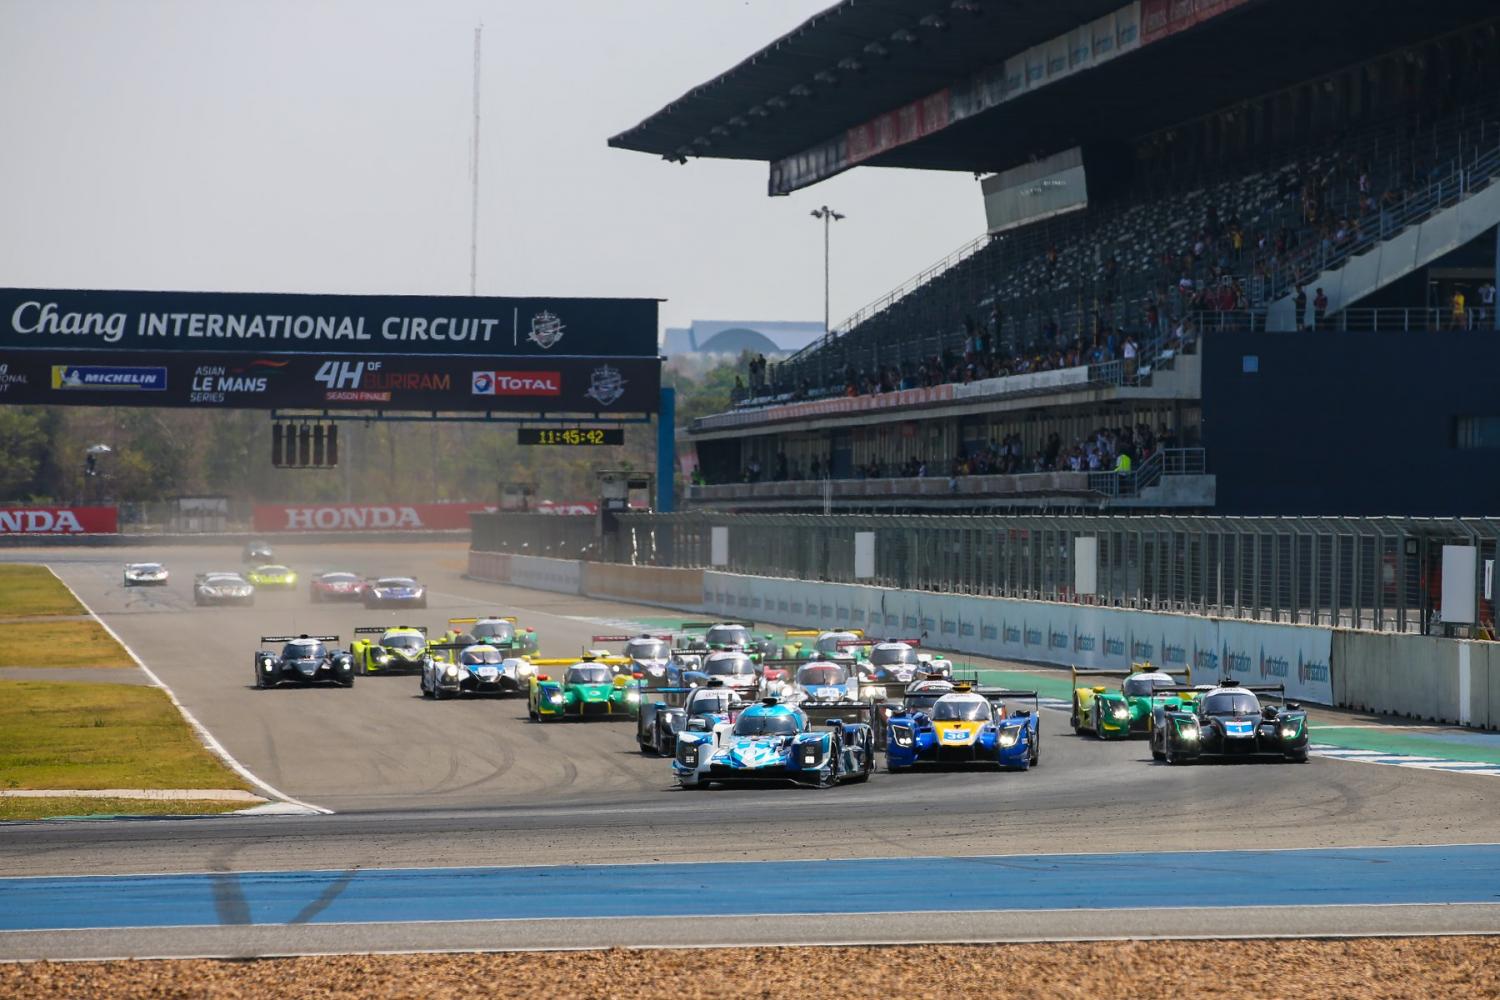 Circuit Du Mans Calendrier 2021 Asian Le Mans Series – Un calendrier remanié pour la saison 2020 